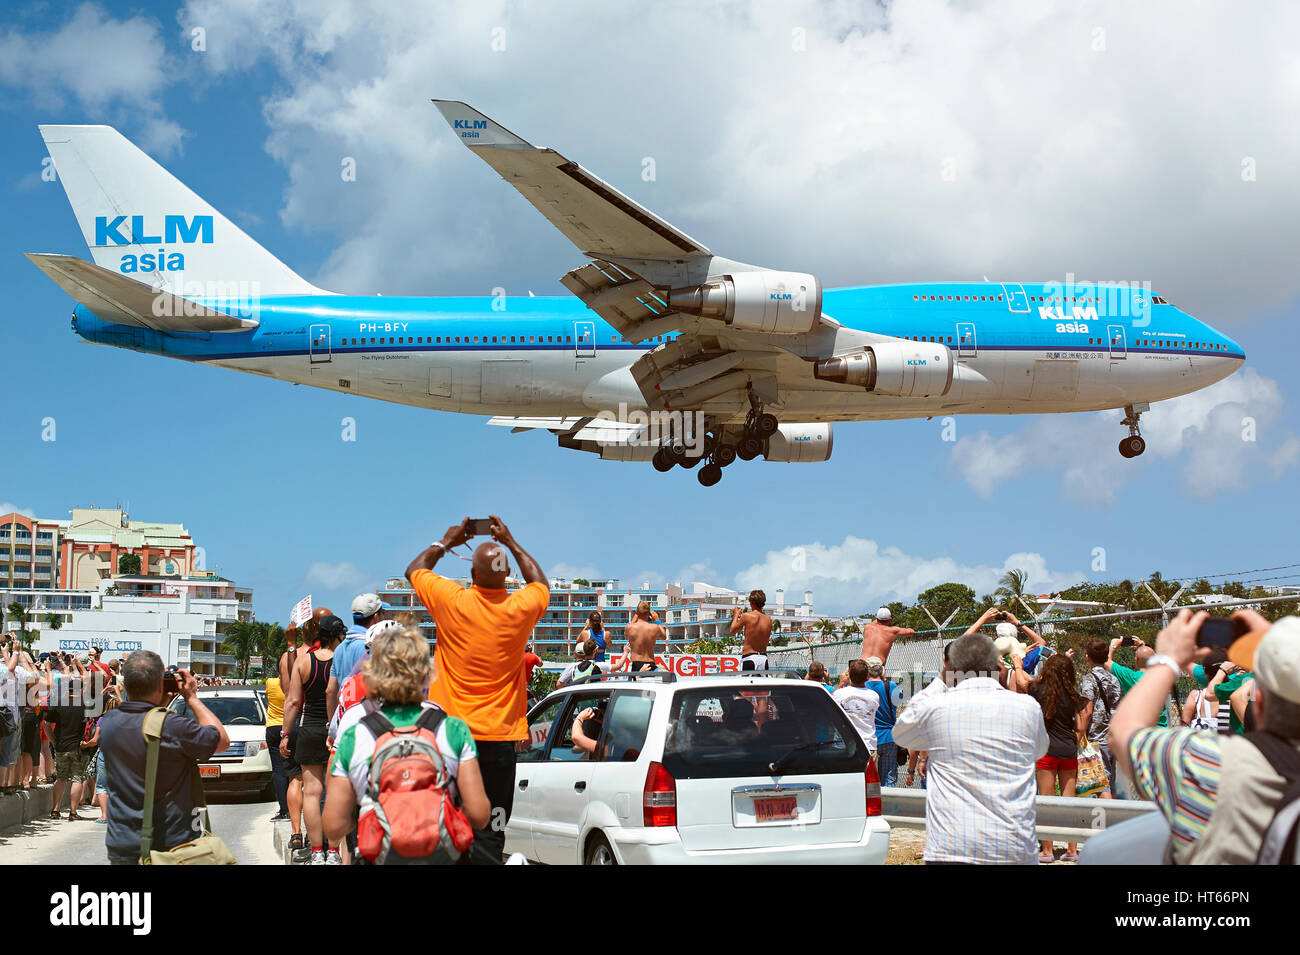 St. Maarten, Philipsburg island - March 17, 2015: Big plane landing under heads of people in famous caribbean st. maarten beach Stock Photo